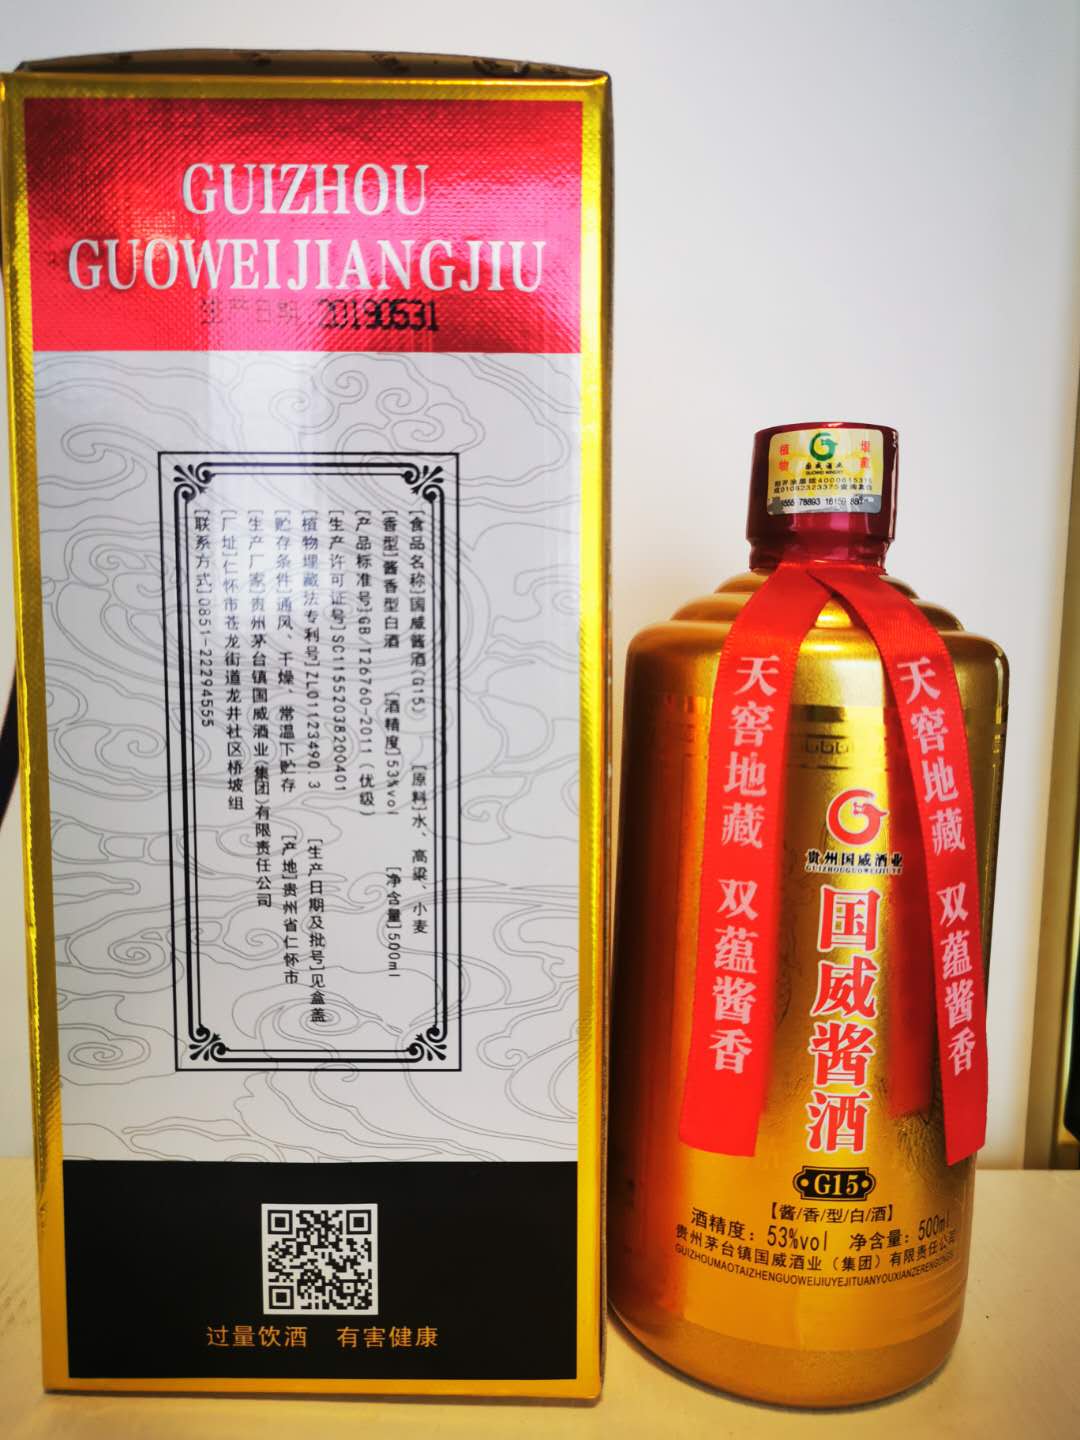 国威酱酒G15_国威酒业怎么样_国威酒价格_国威酒业官网图片